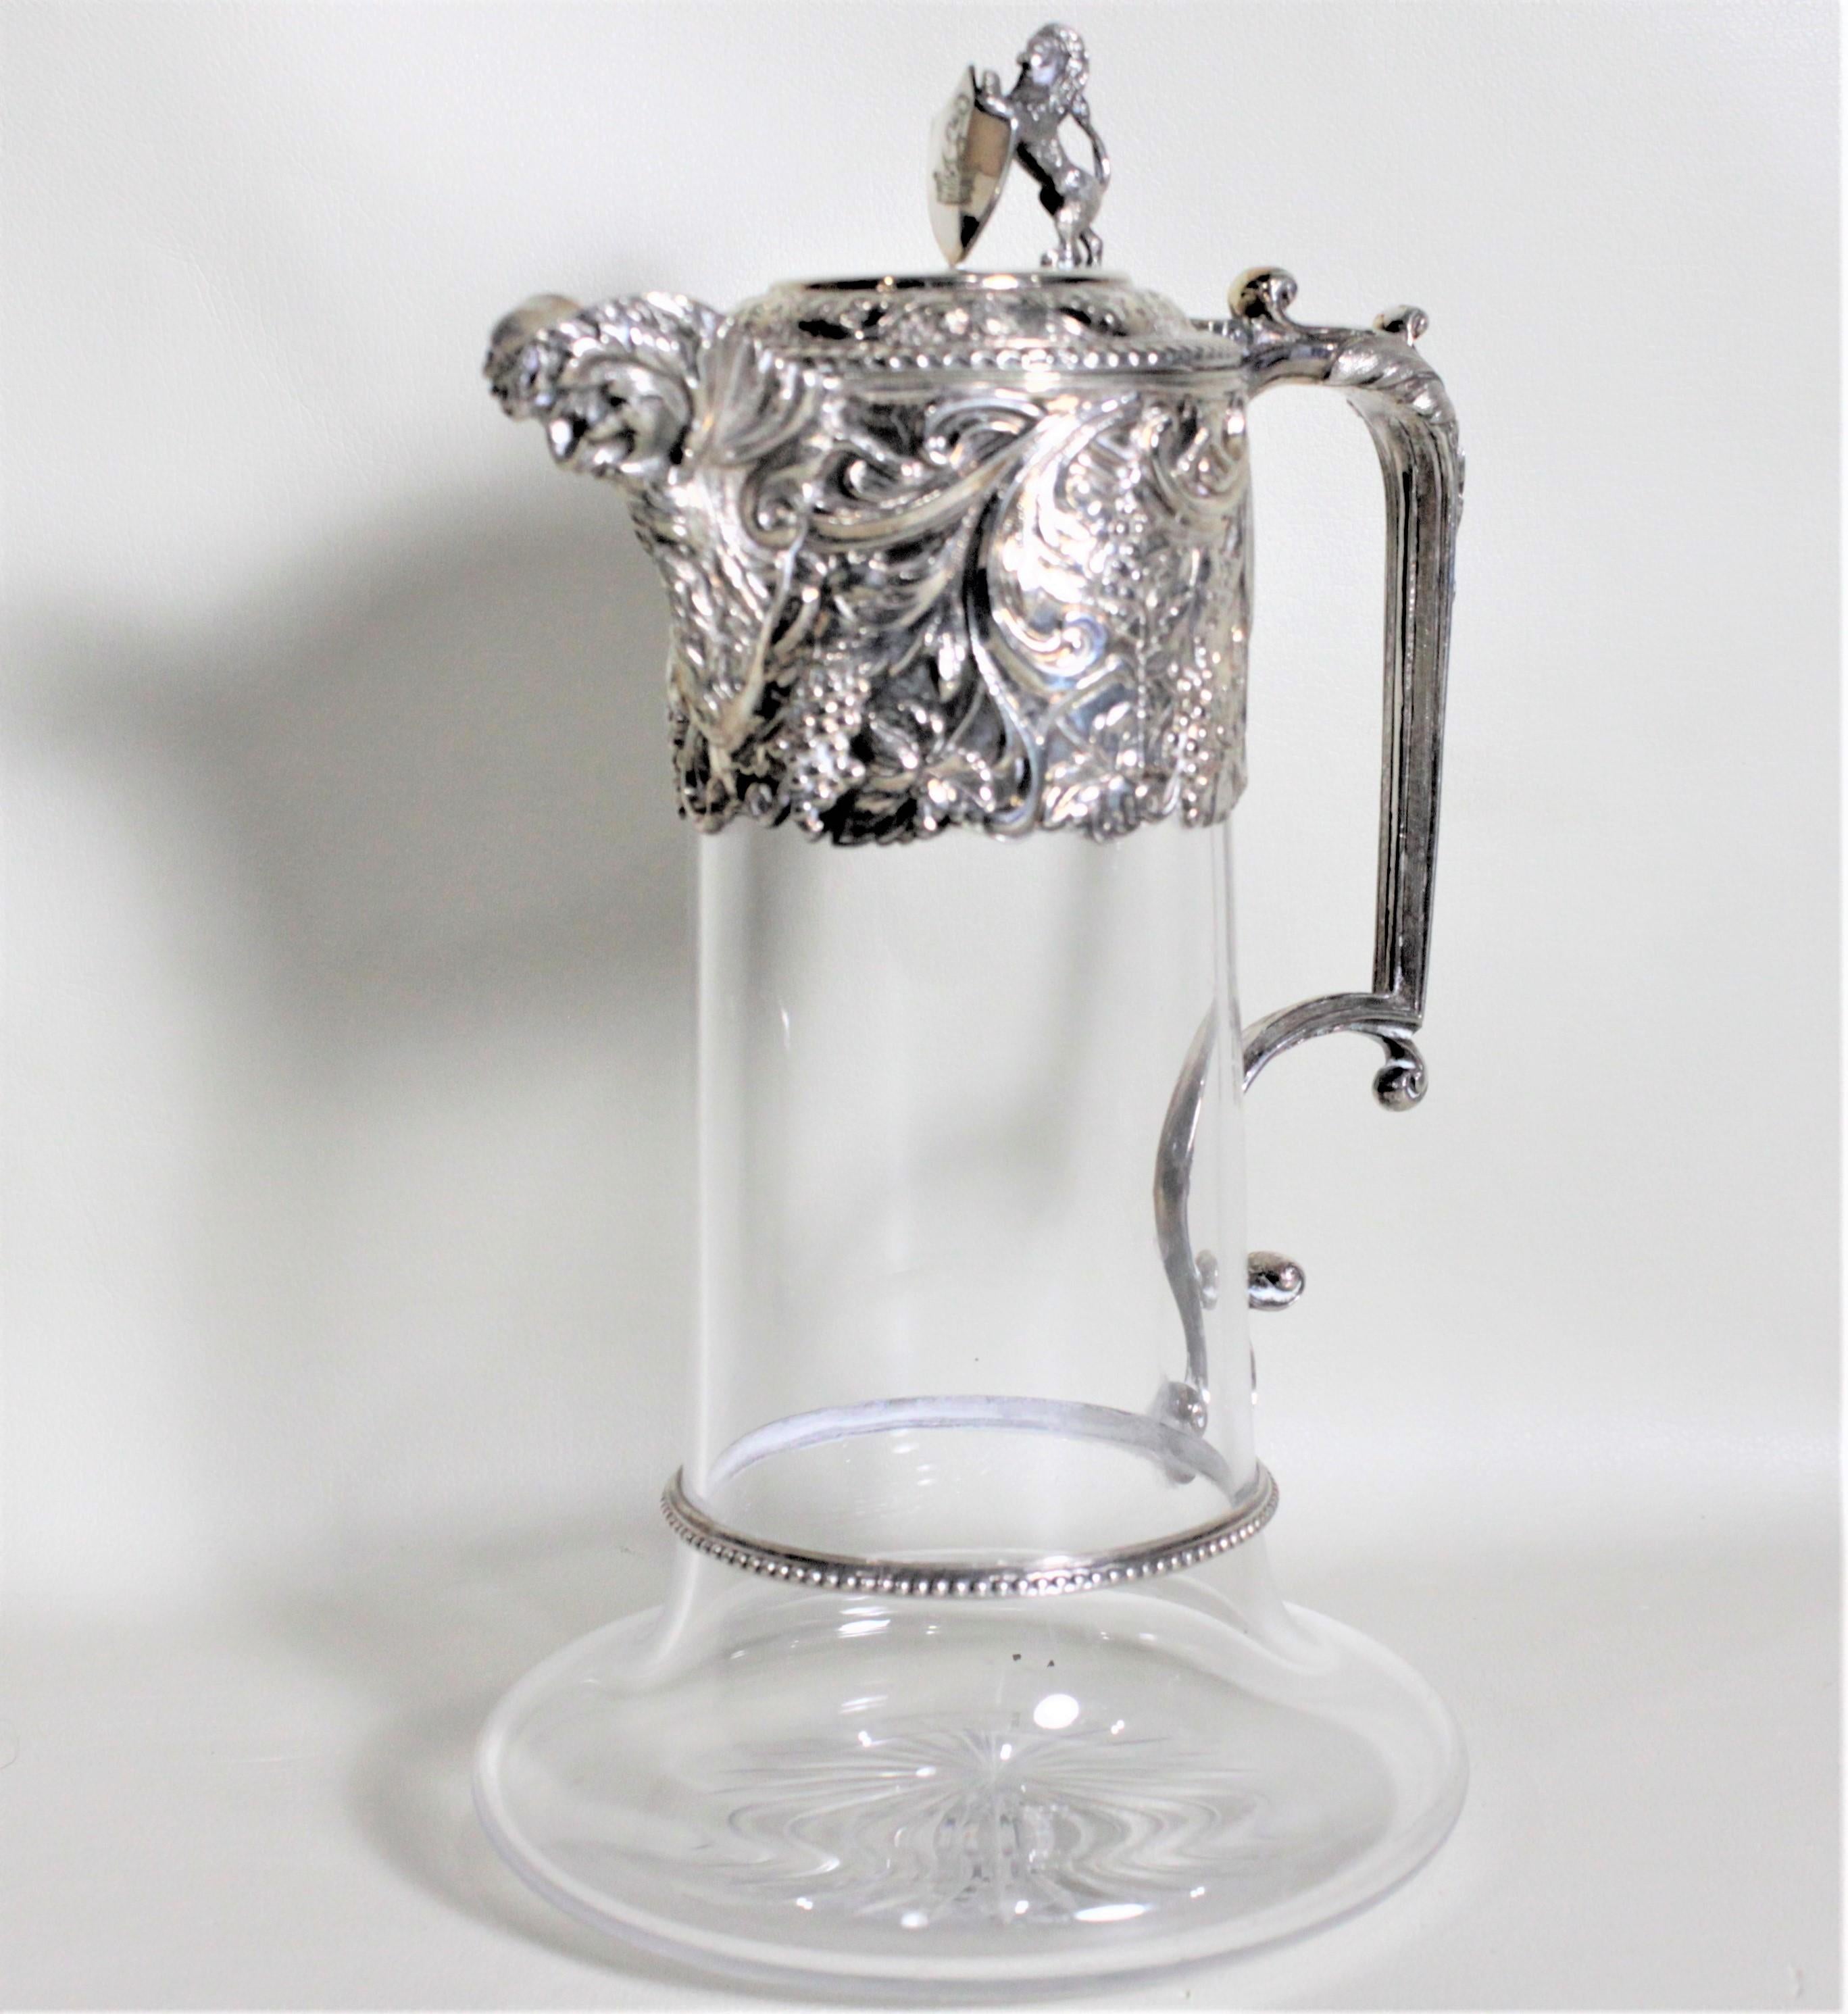 Dieser antike Krug aus Silberblech und geschliffenem Glas wurde höchstwahrscheinlich um 1900 in England im viktorianischen Stil hergestellt. Der Krug zeigt einen figuralen, stehenden Löwen, der ein Schild auf dem kunstvoll verzierten, erhabenen